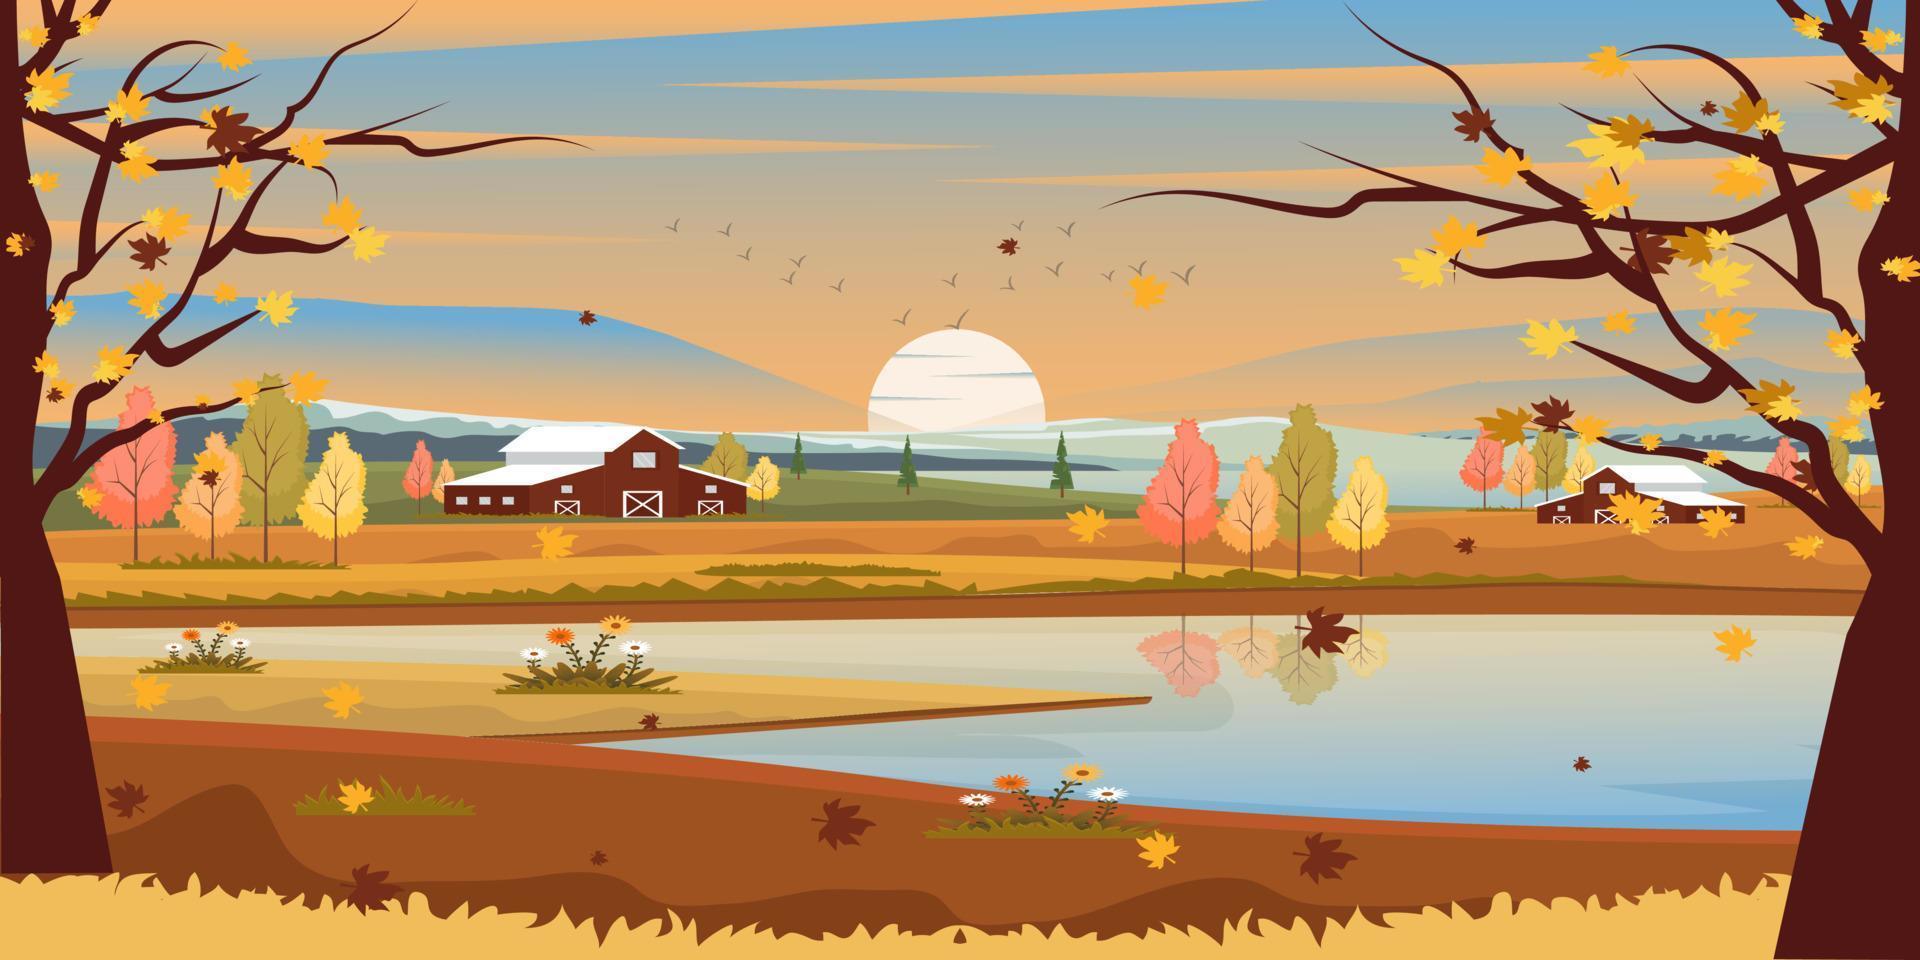 uma vista panorâmica em um fundo de outono, ilustração plana bem definida vetor